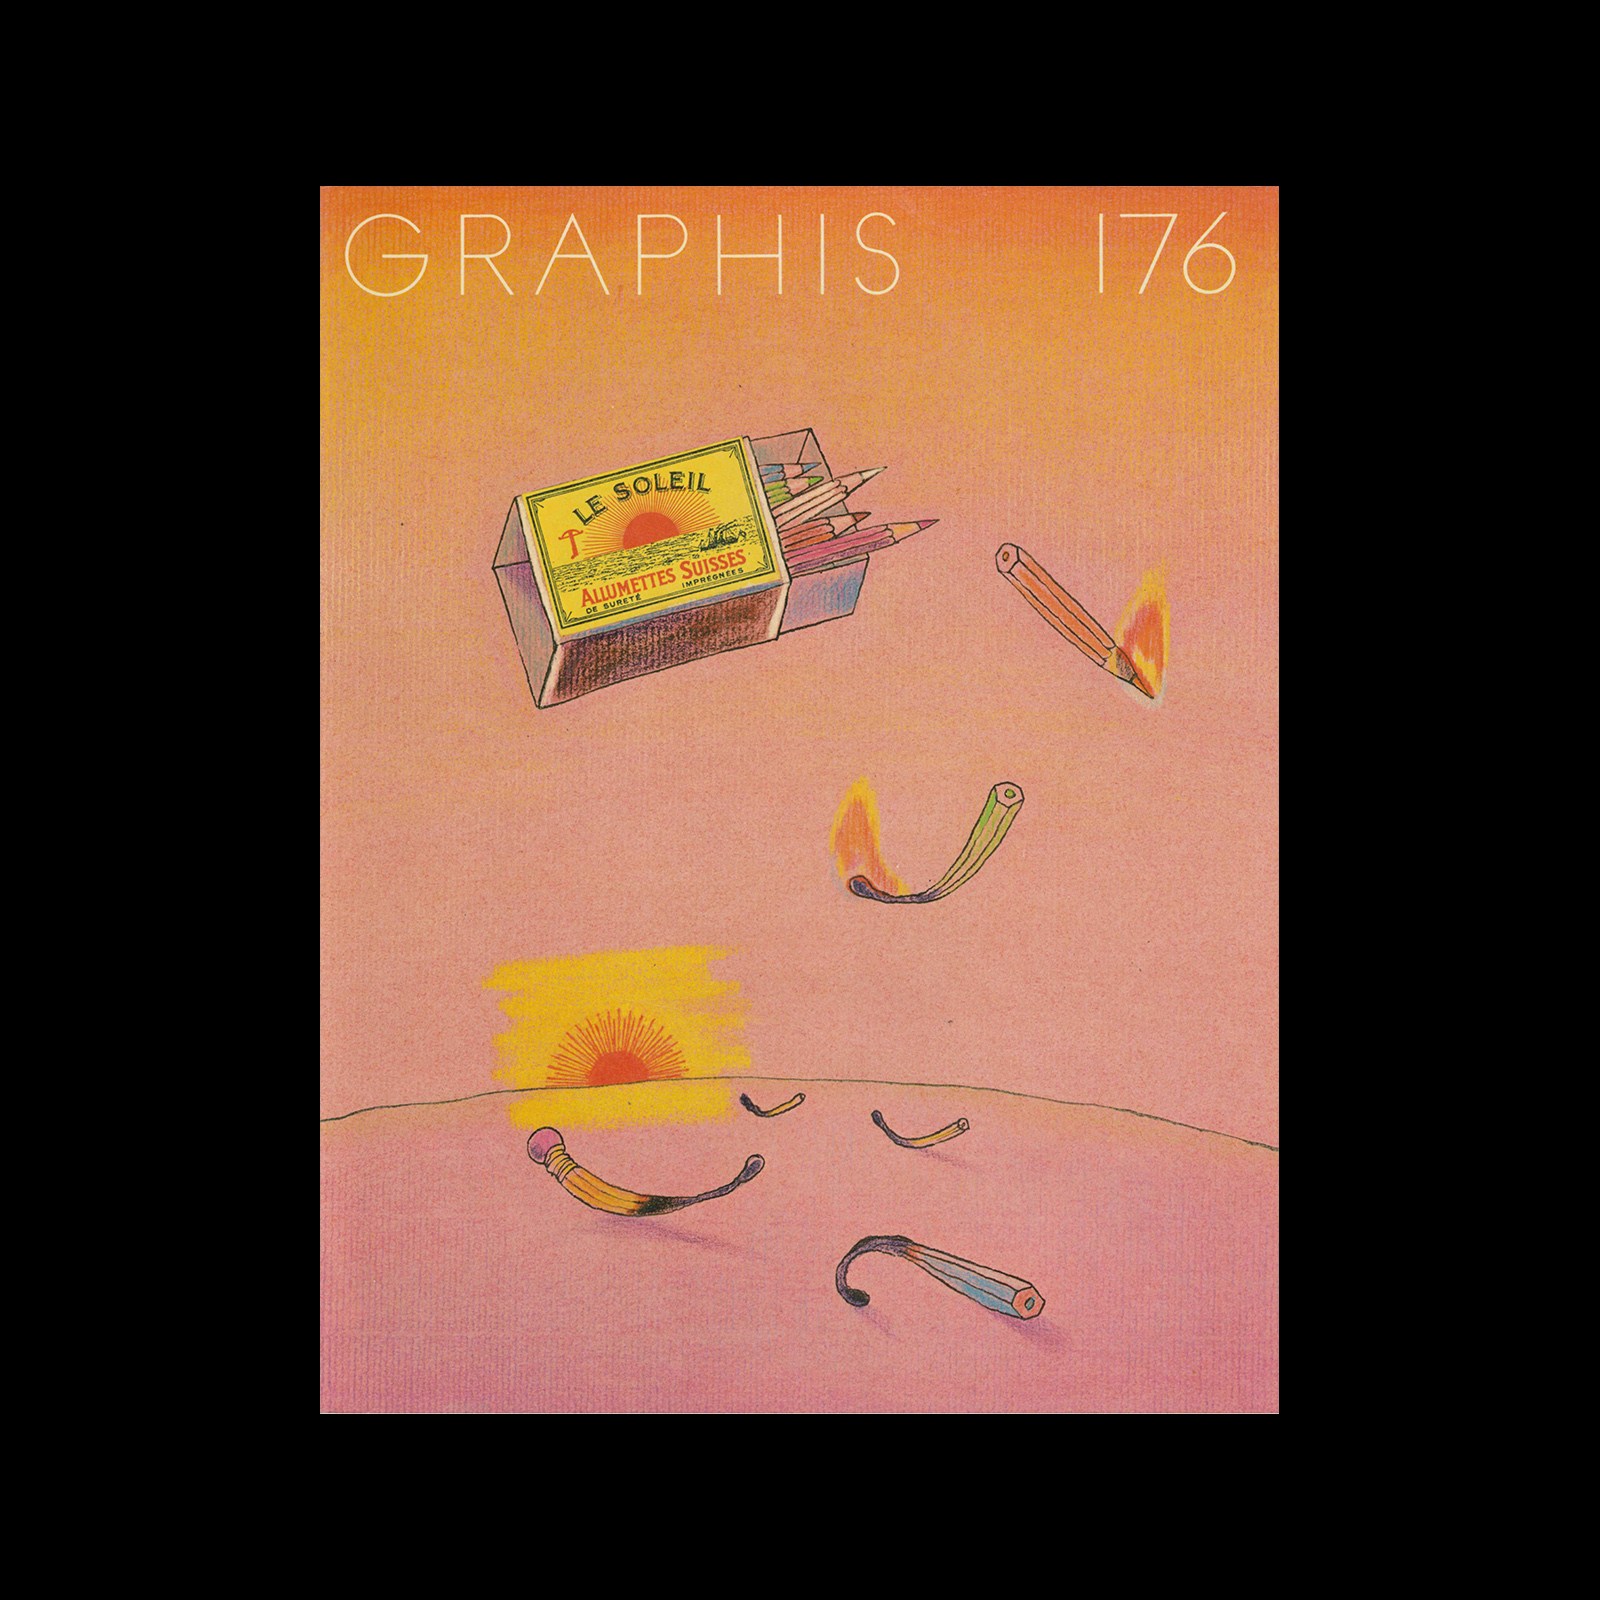  Graphis 176, 1974. Cover design by Eugène Mihaesco.